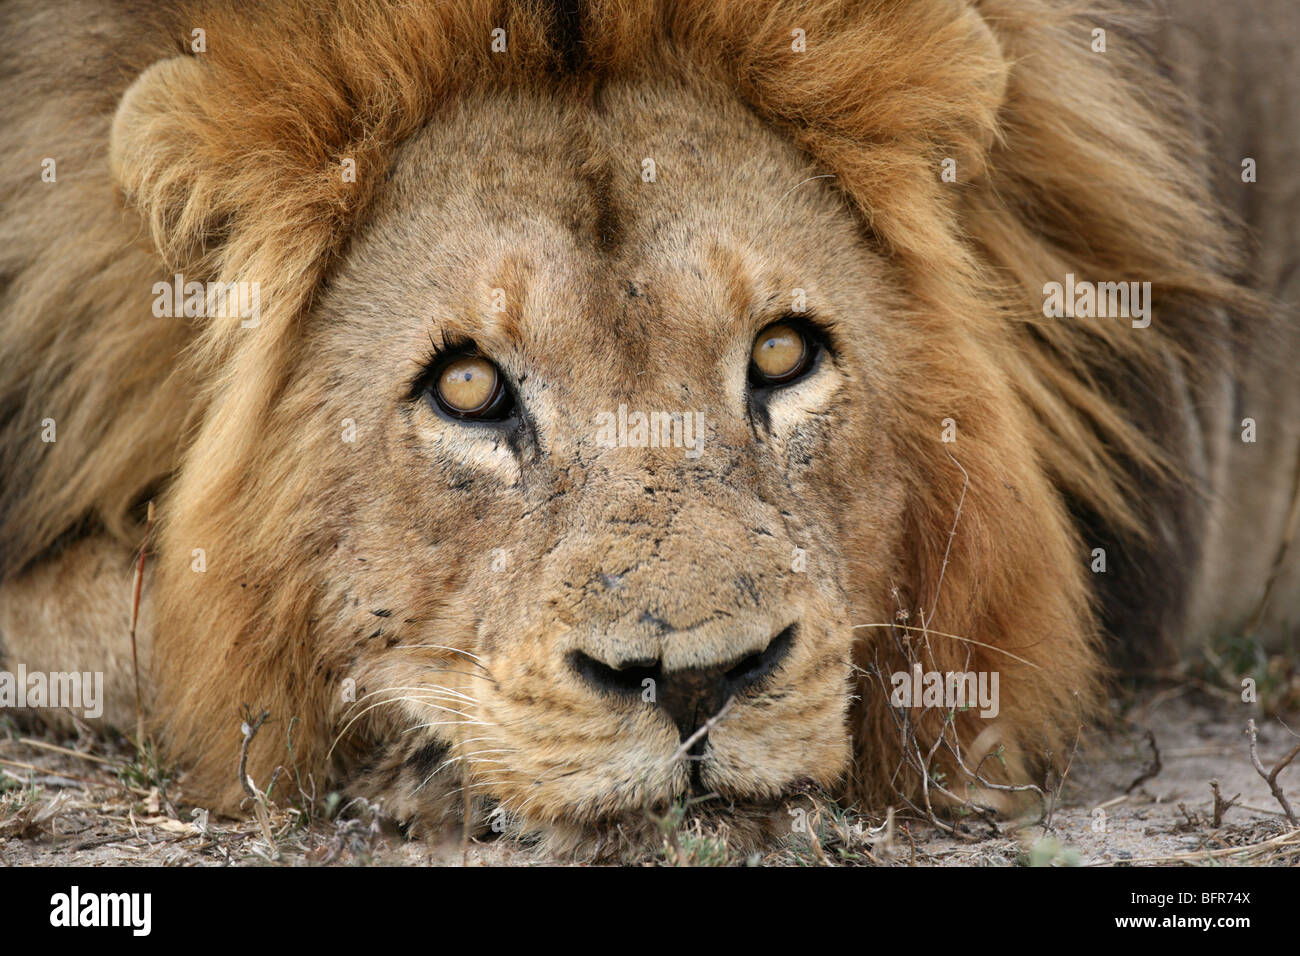 Apretado retrato de un león macho con cicatrices en el rostro apoyado sobre sus patas delanteras mirando hacia arriba en el cielo Foto de stock